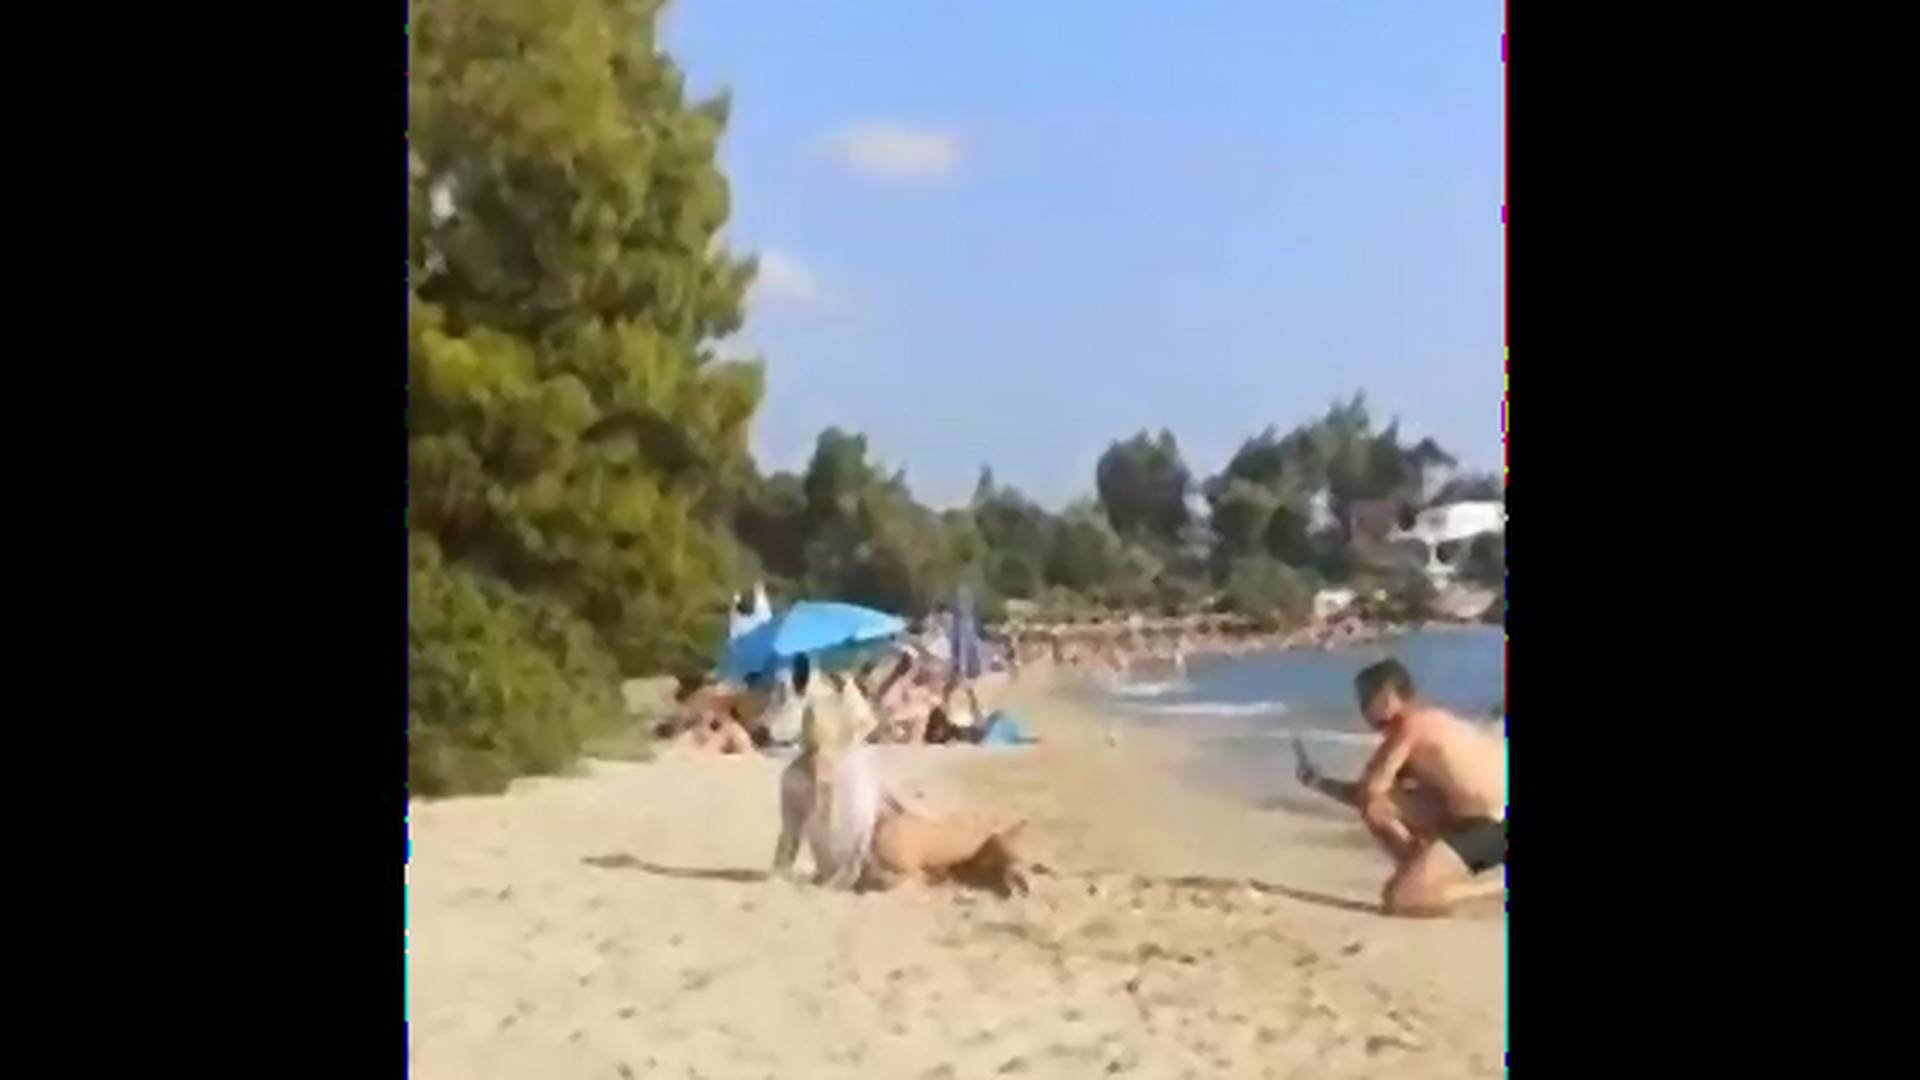 Ivan će zbog jednog videa sa plaže dobro da zapamti ovo leto - svi se smeju komentaru njegove supruge